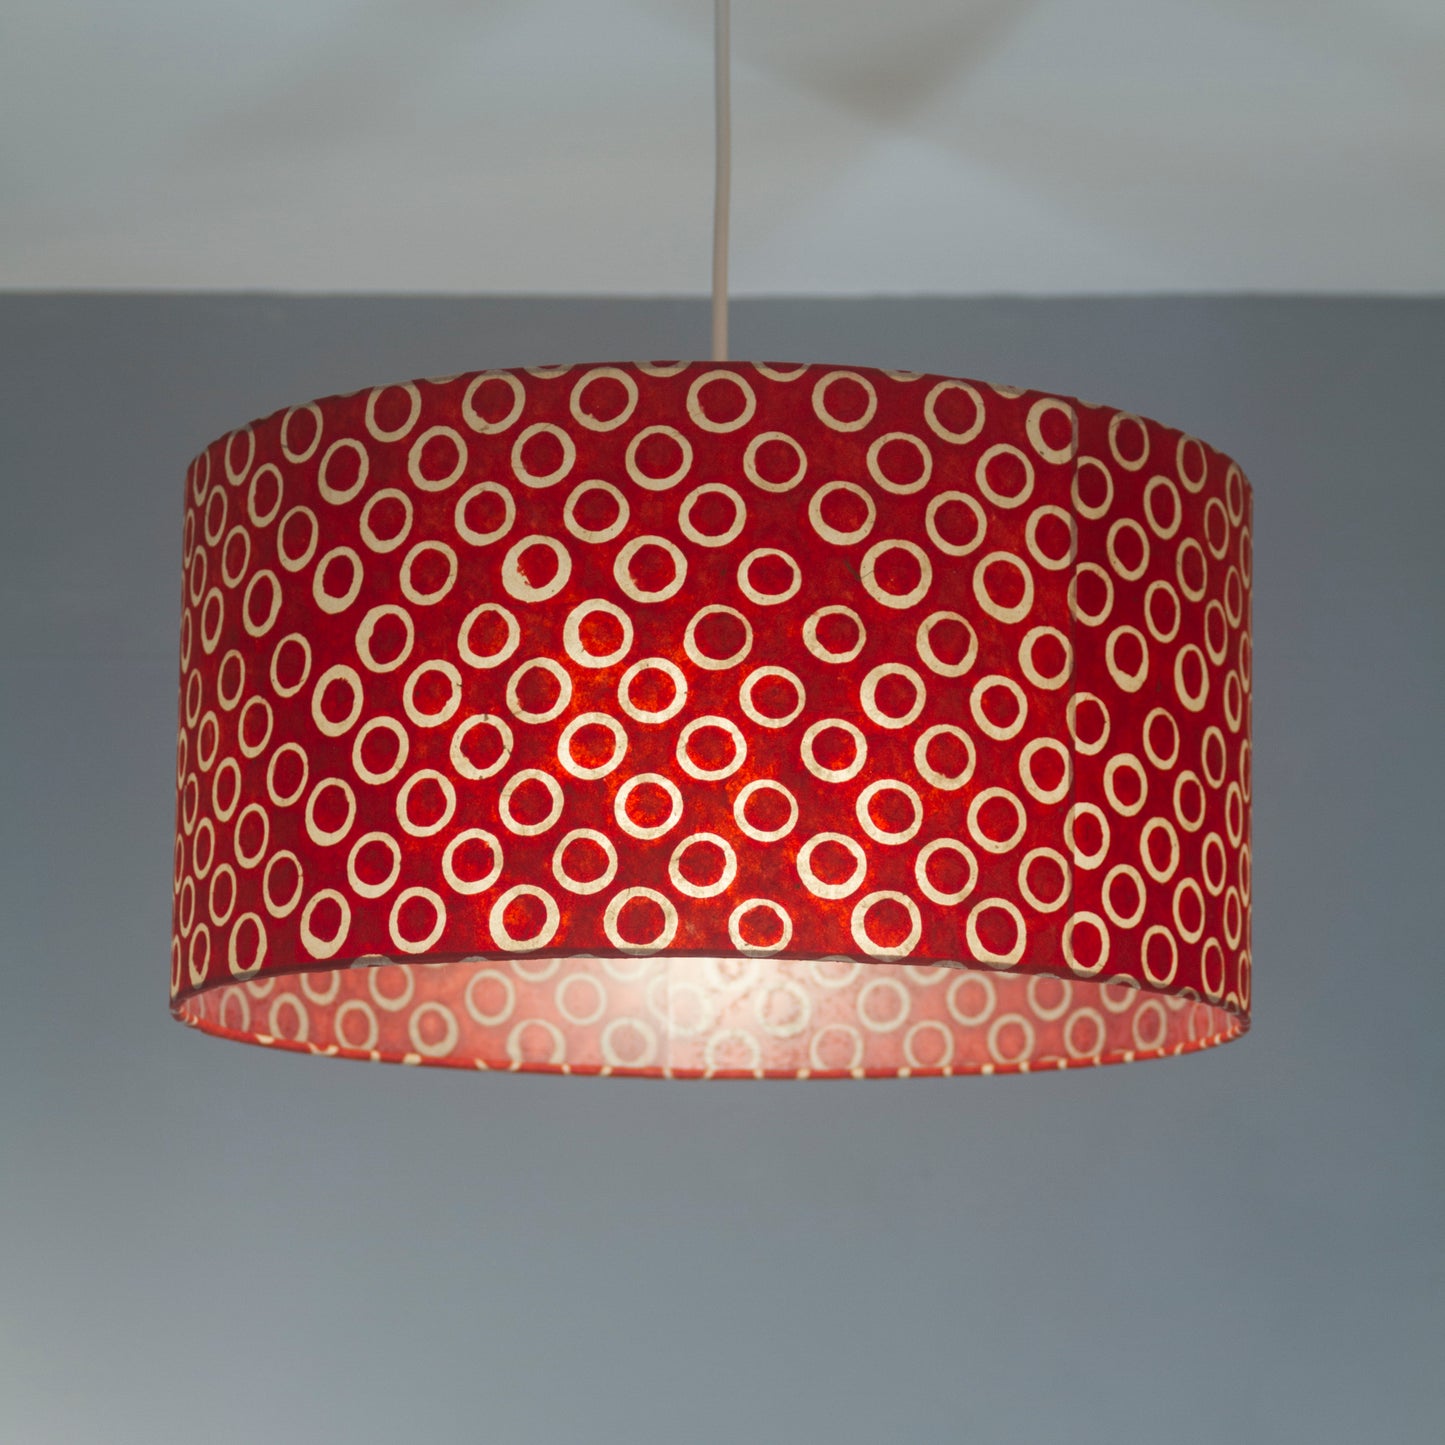 3 Tier Lamp Shade - P83 - Batik Red Circles, 40cm x 20cm, 30cm x 17.5cm & 20cm x 15cm